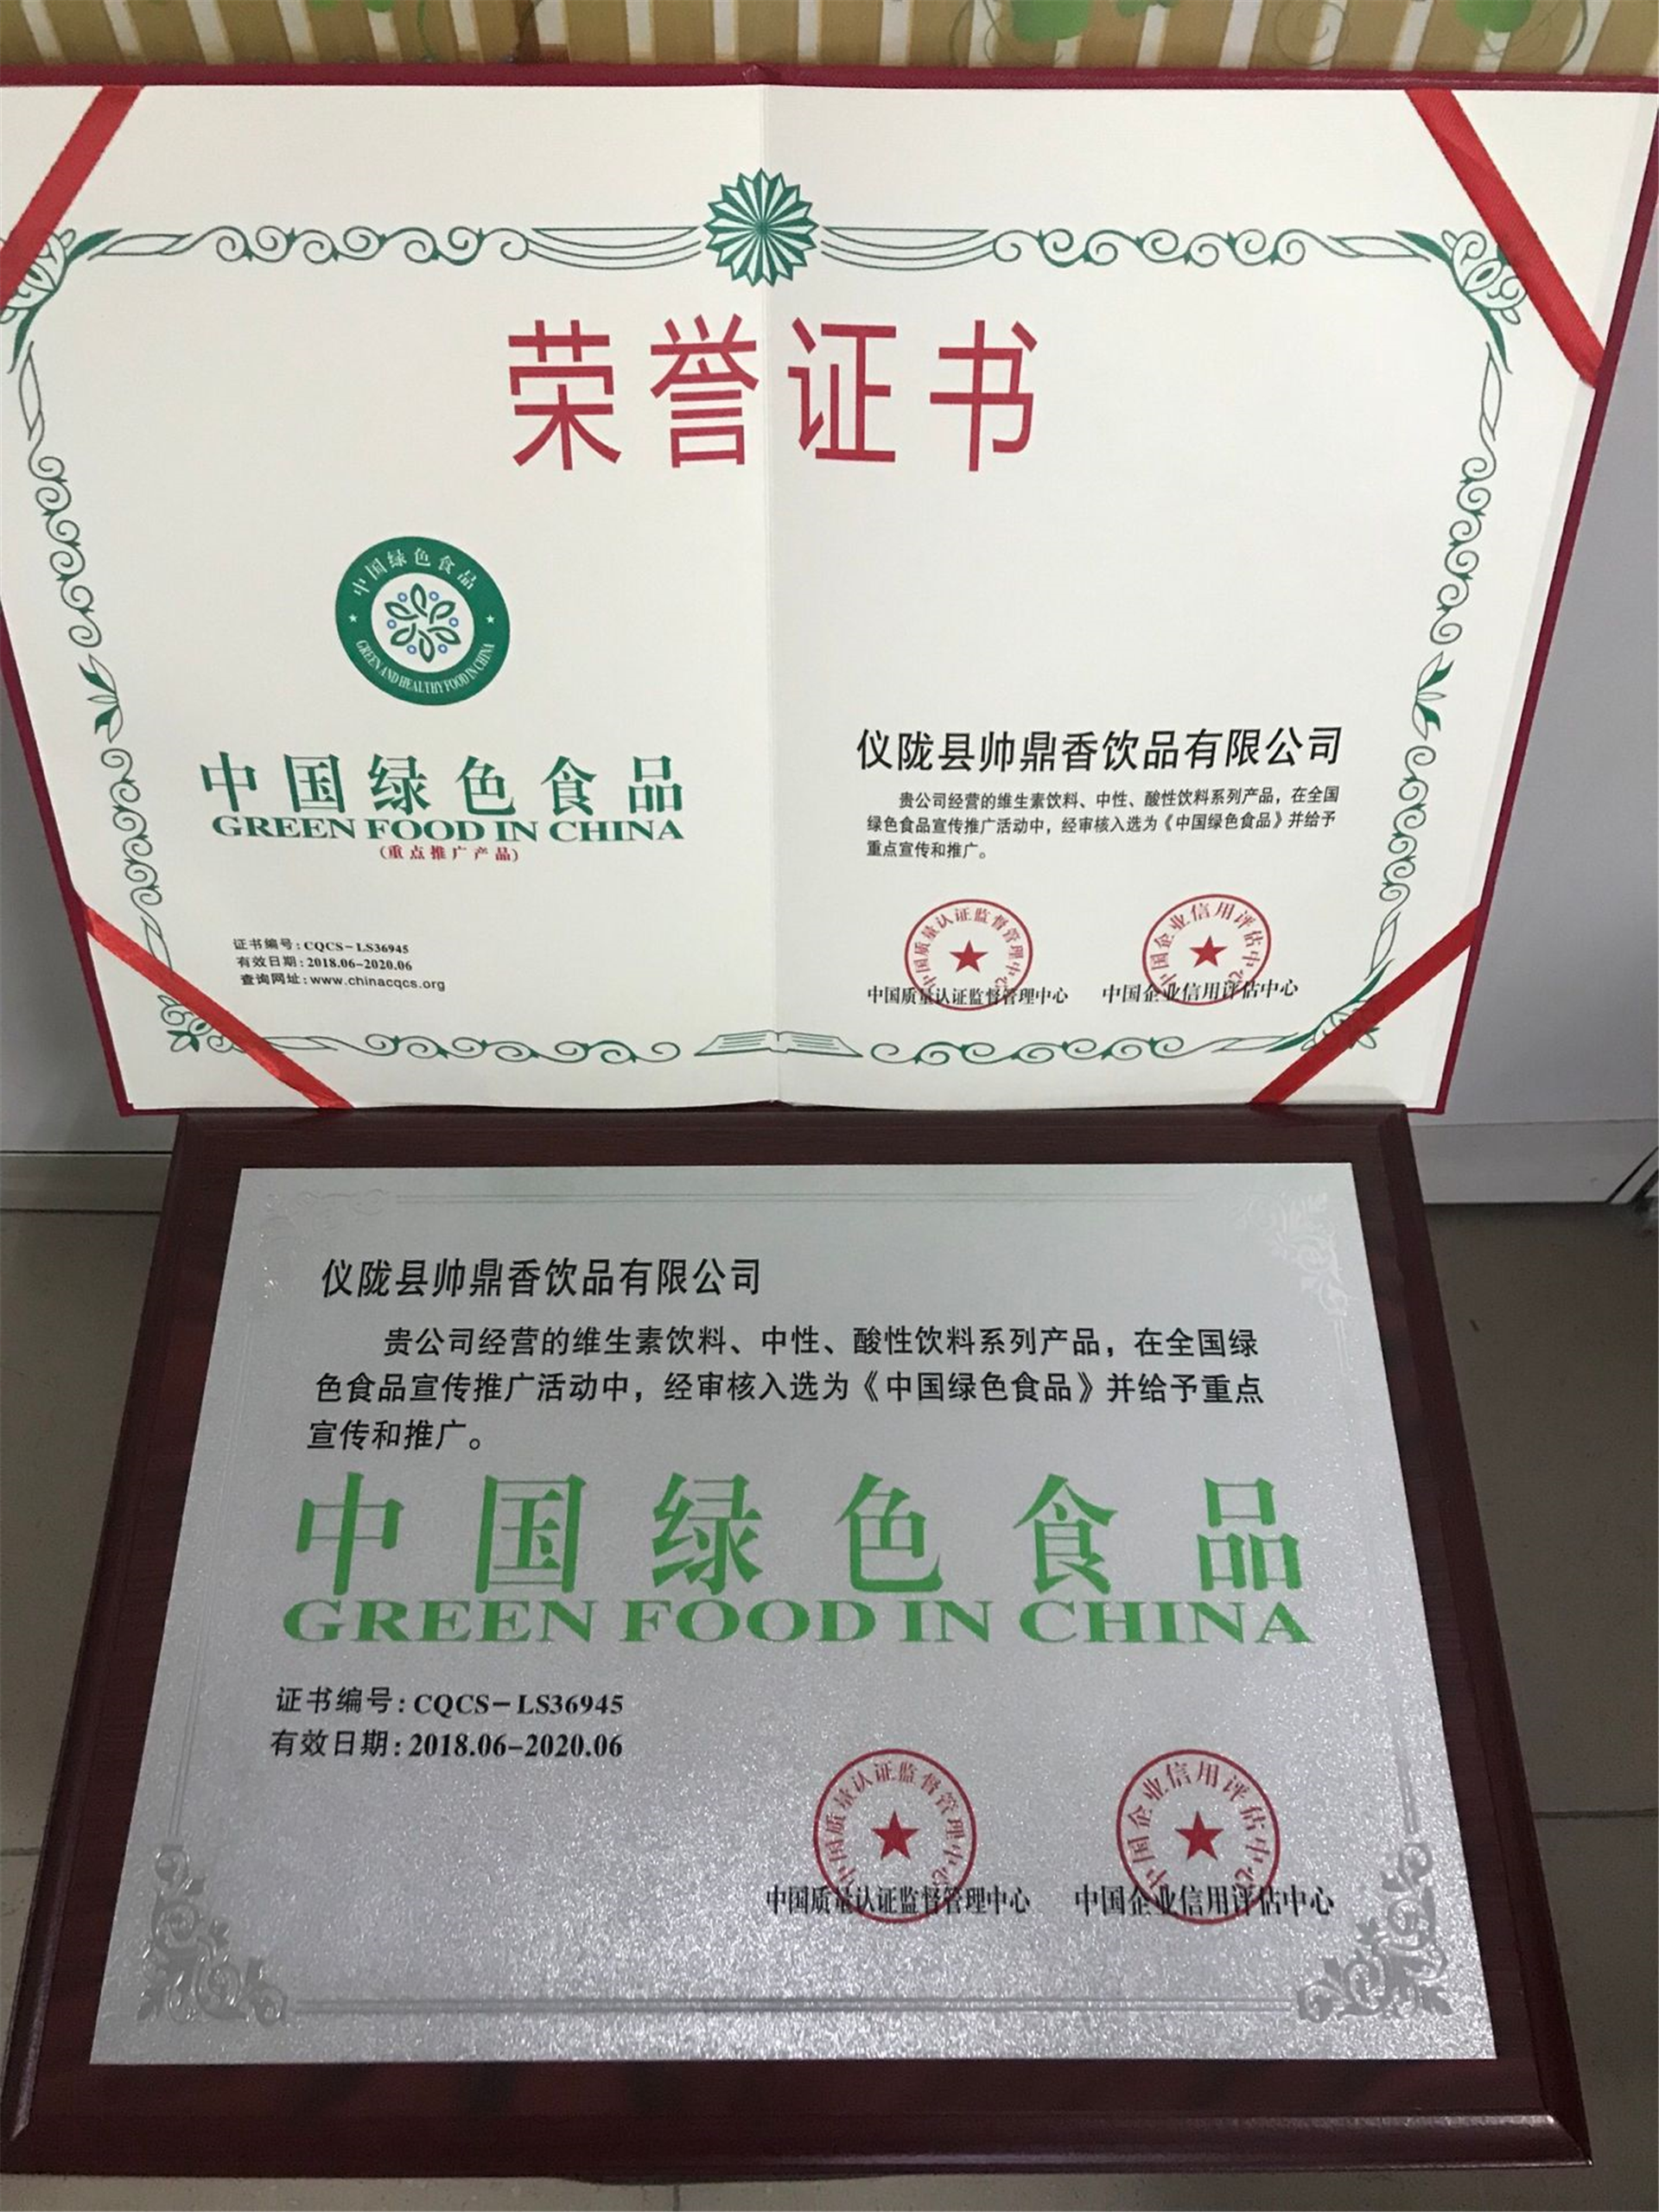 秦皇岛企业申报办理企业荣誉证书标志是什么